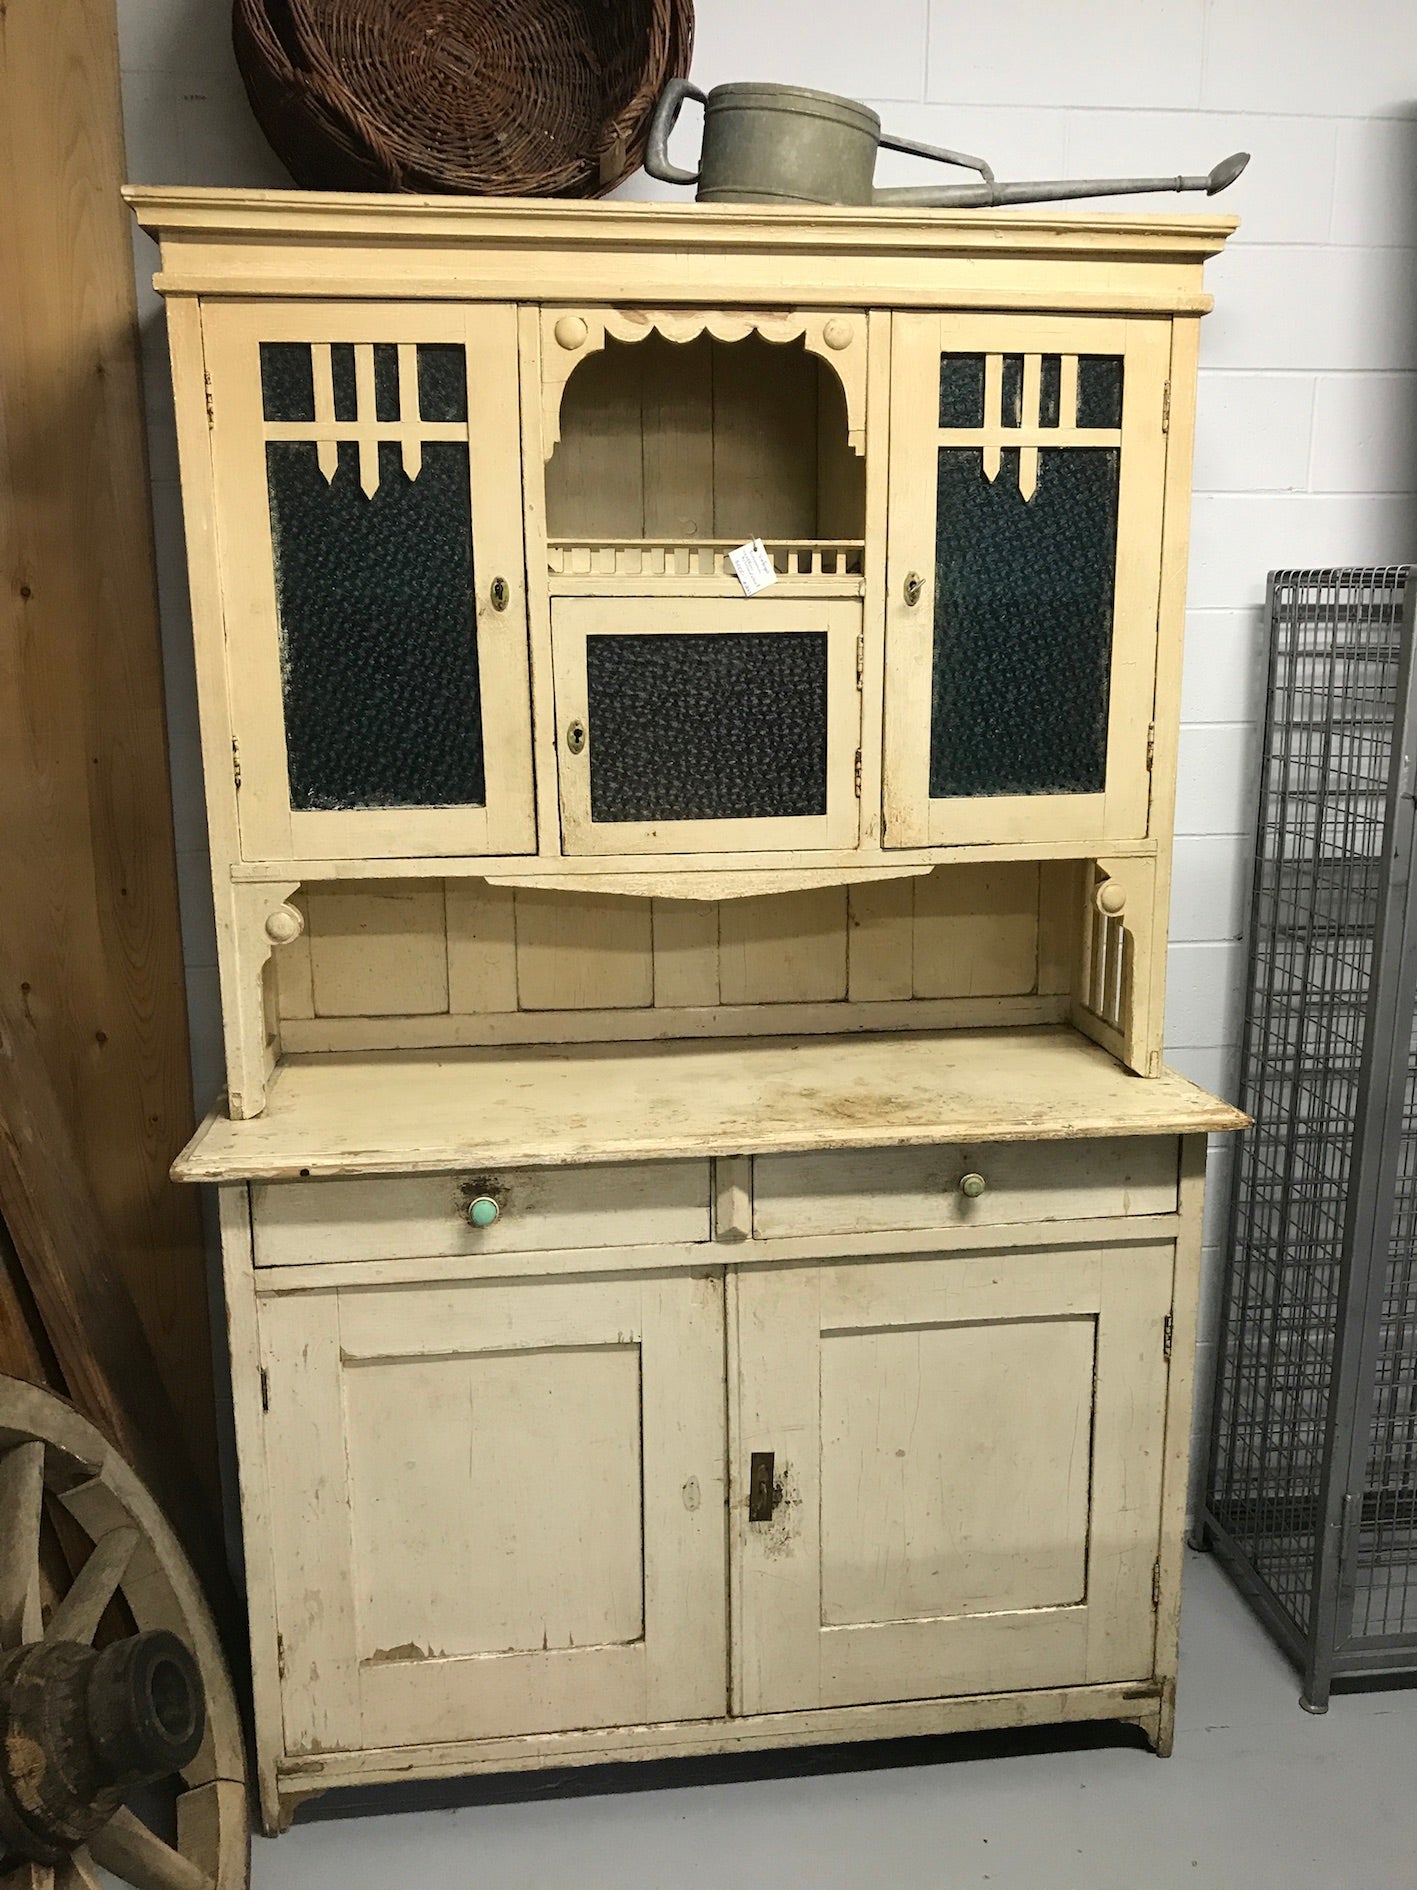 Vintage industrial European wooden kitchen cabinet #2043 Byron